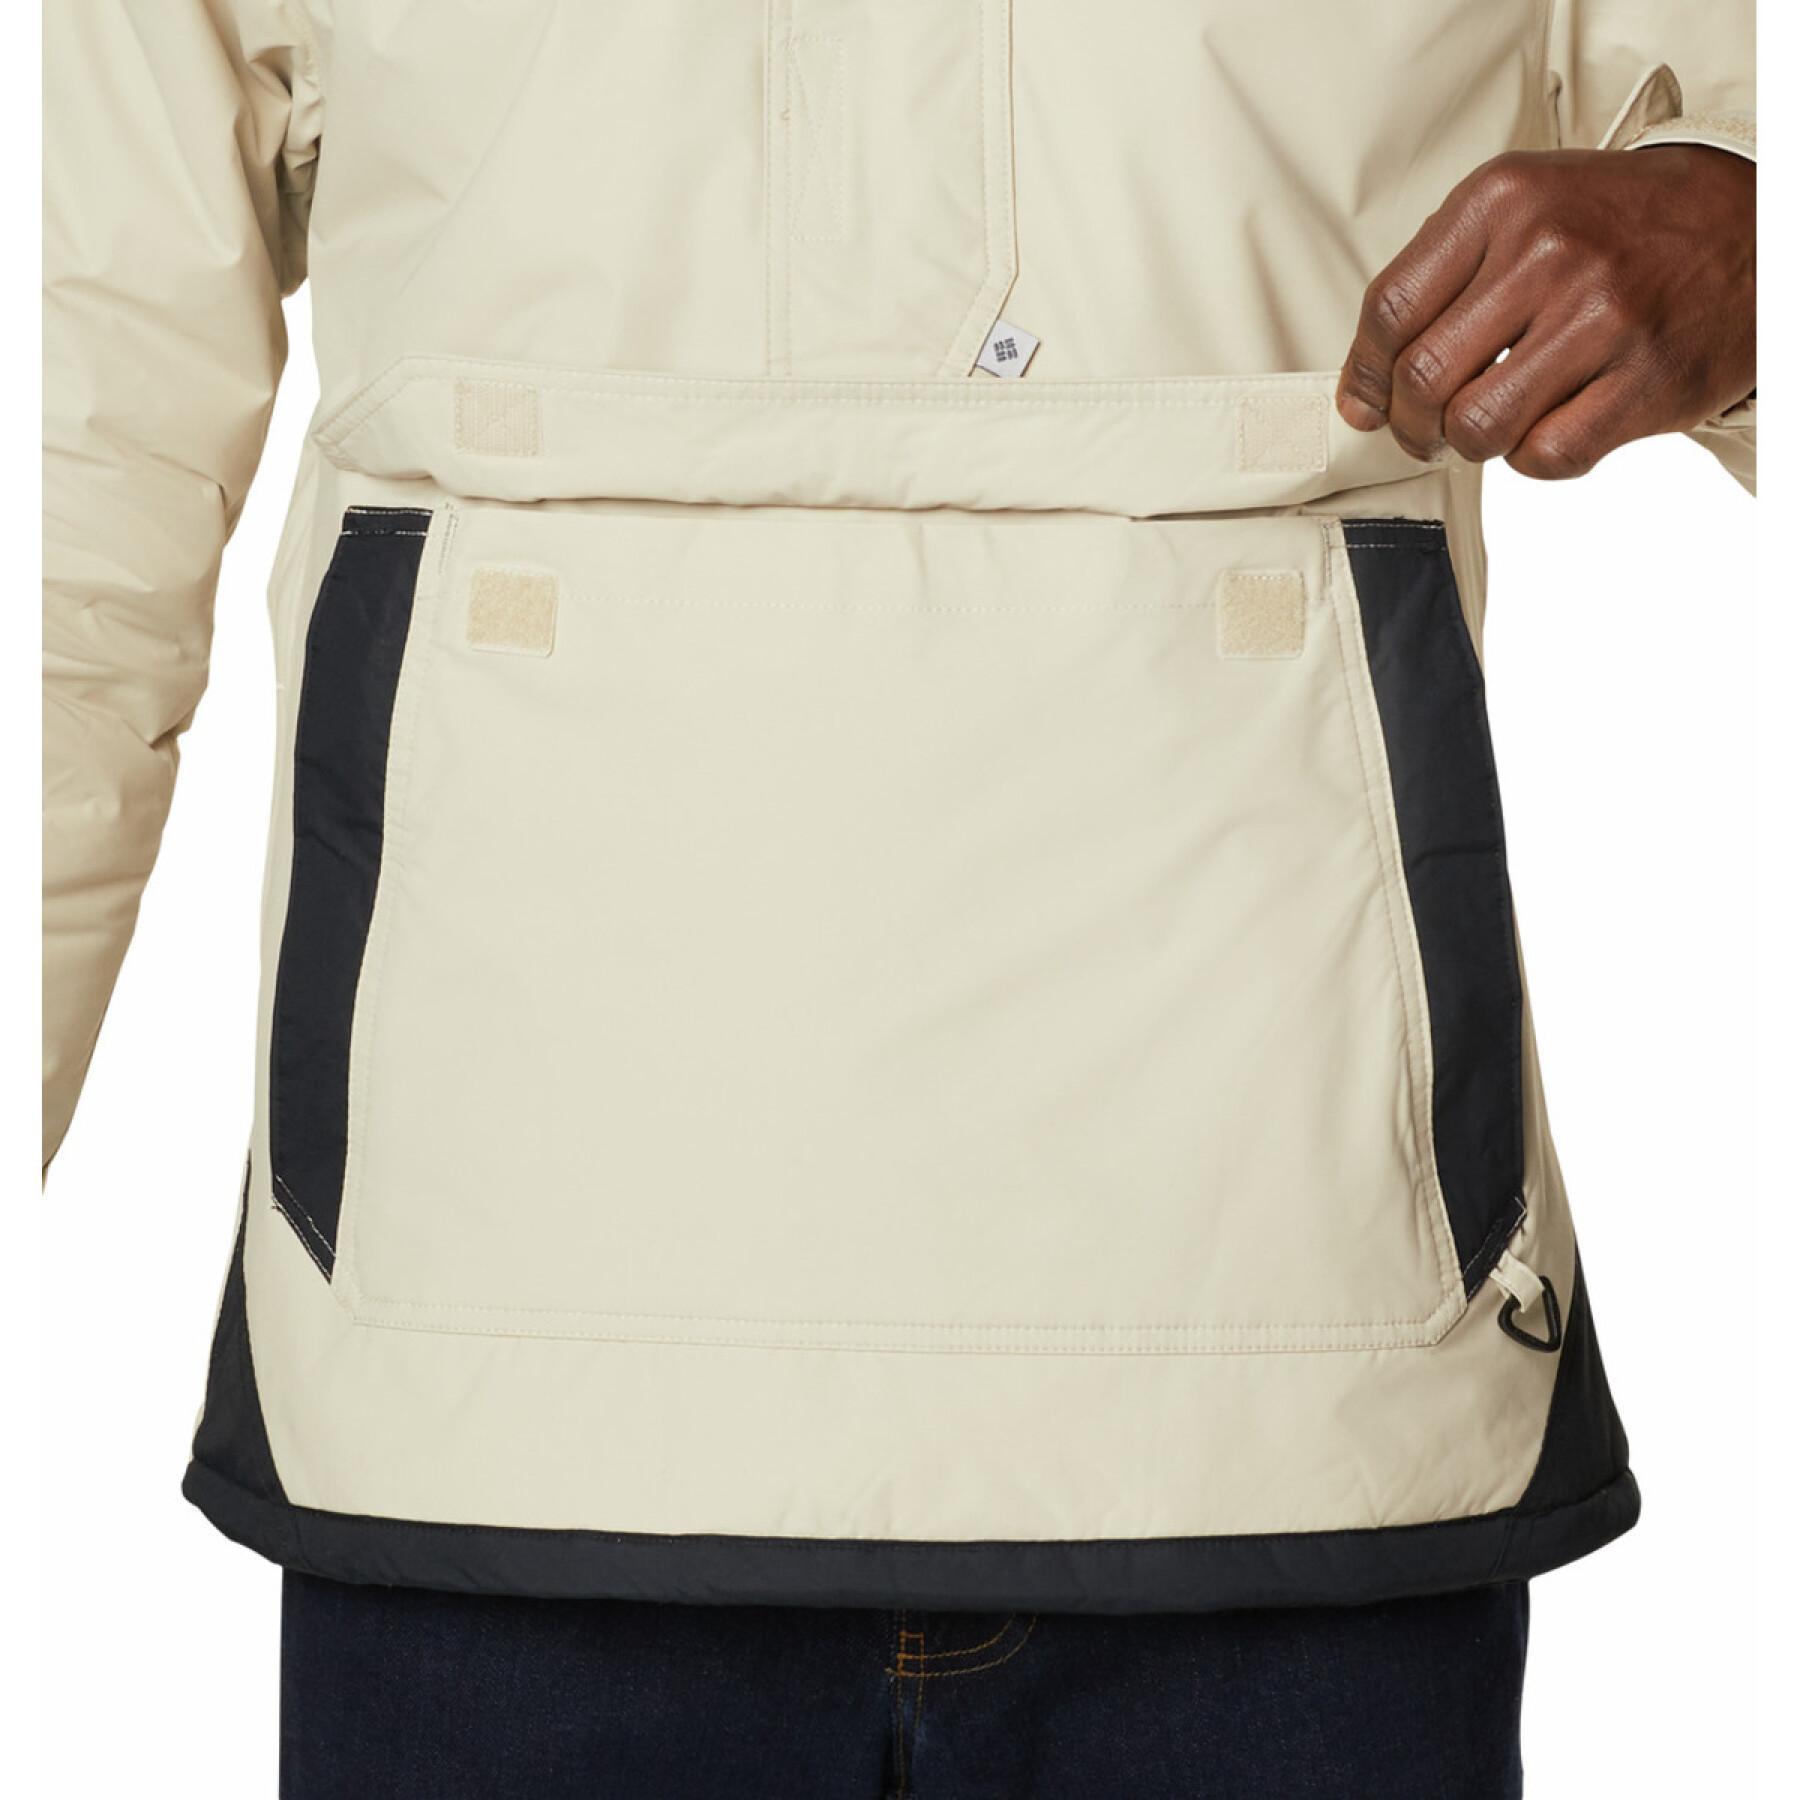 1/2 zip jacket Columbia Challenger